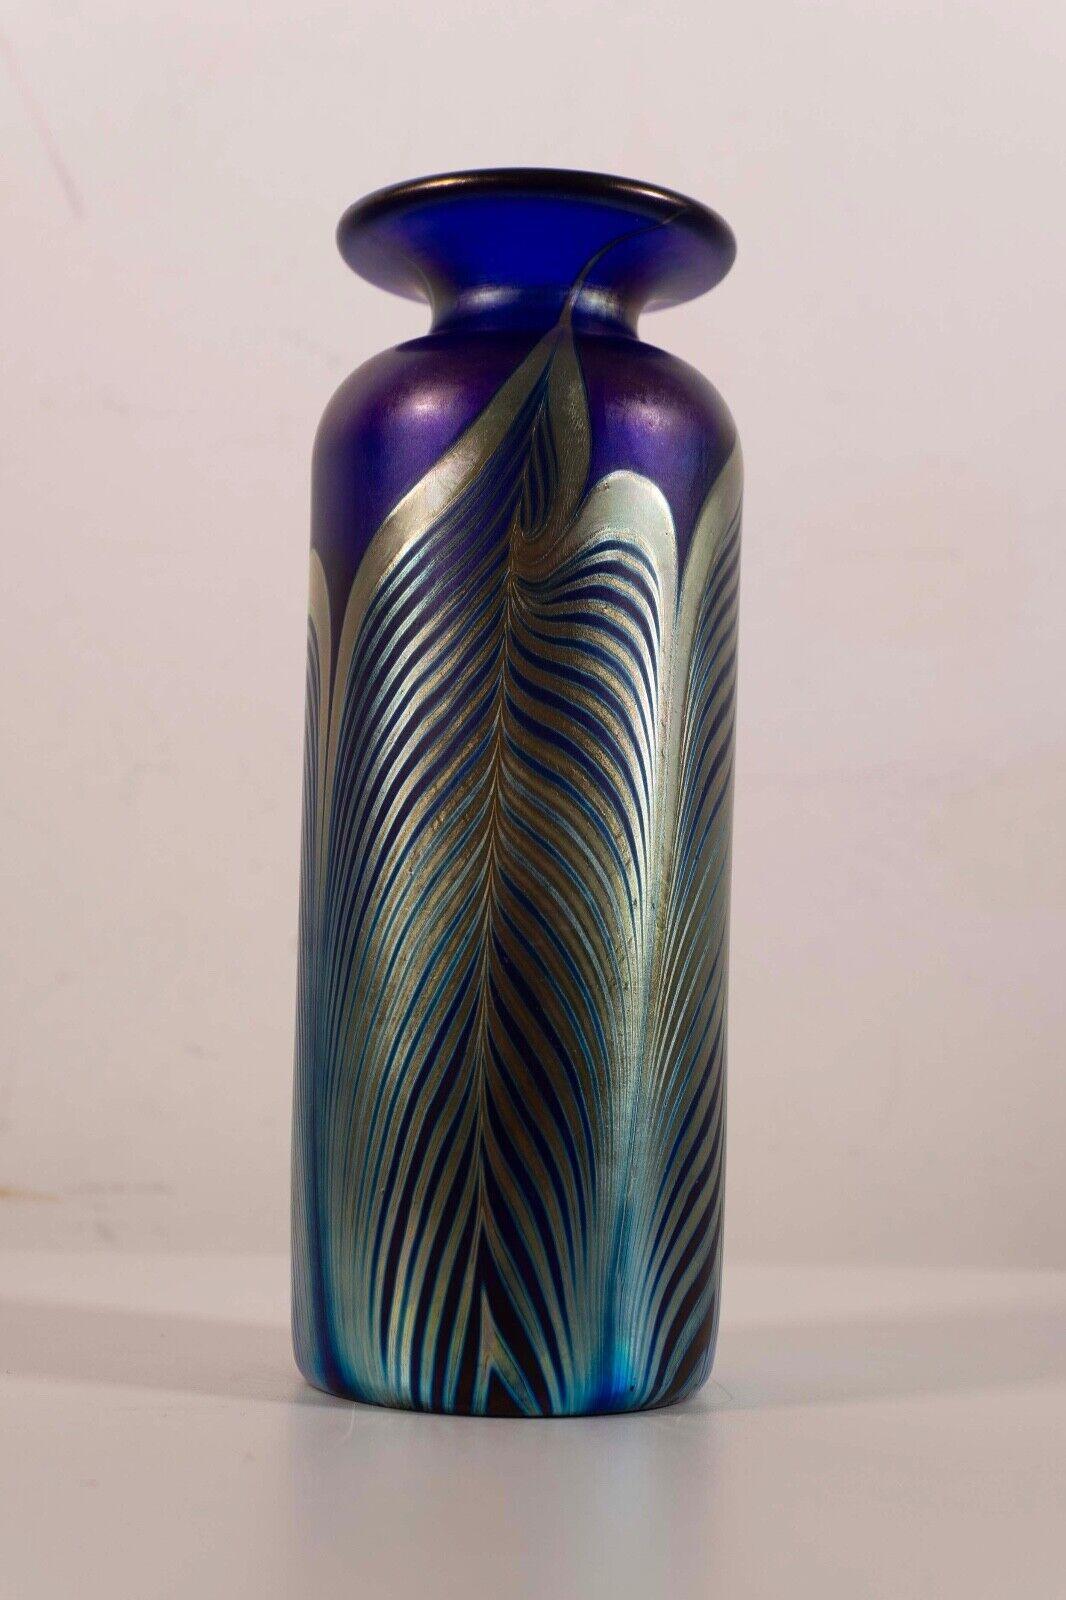 Ce petit vase en verre signé par Stephens Fellerman s'inscrit magnifiquement dans le style Art nouveau avec son exquis mélange de teintes bleues et vertes. Les lignes sinueuses et les motifs délicats évoquent l'élégance intemporelle de l'ère Art